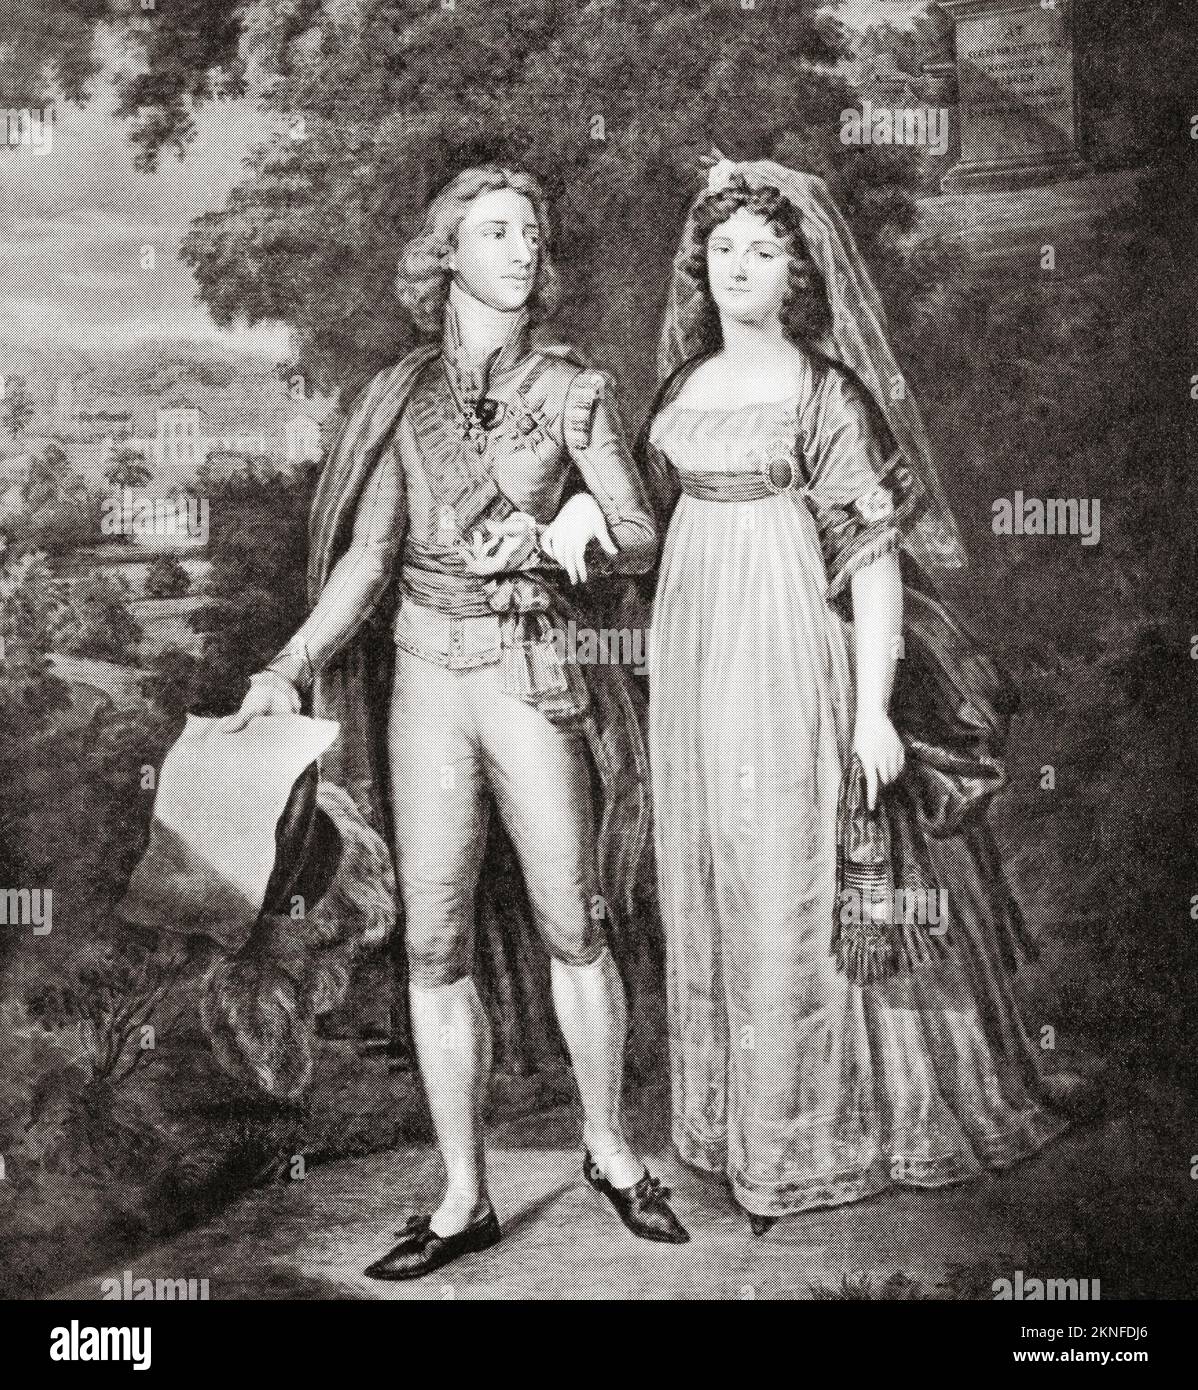 Gustav IV Adolf di Svezia e sua moglie Federico di Baden. Gustav IV Adolf o Gustav IV Adolph, 1778 – 1837. Re di Svezia. Friederike 'Frederica' Dorothea Wilhelmina di Baden, 1781 - 1826. Regina consorte di Svezia. Foto Stock